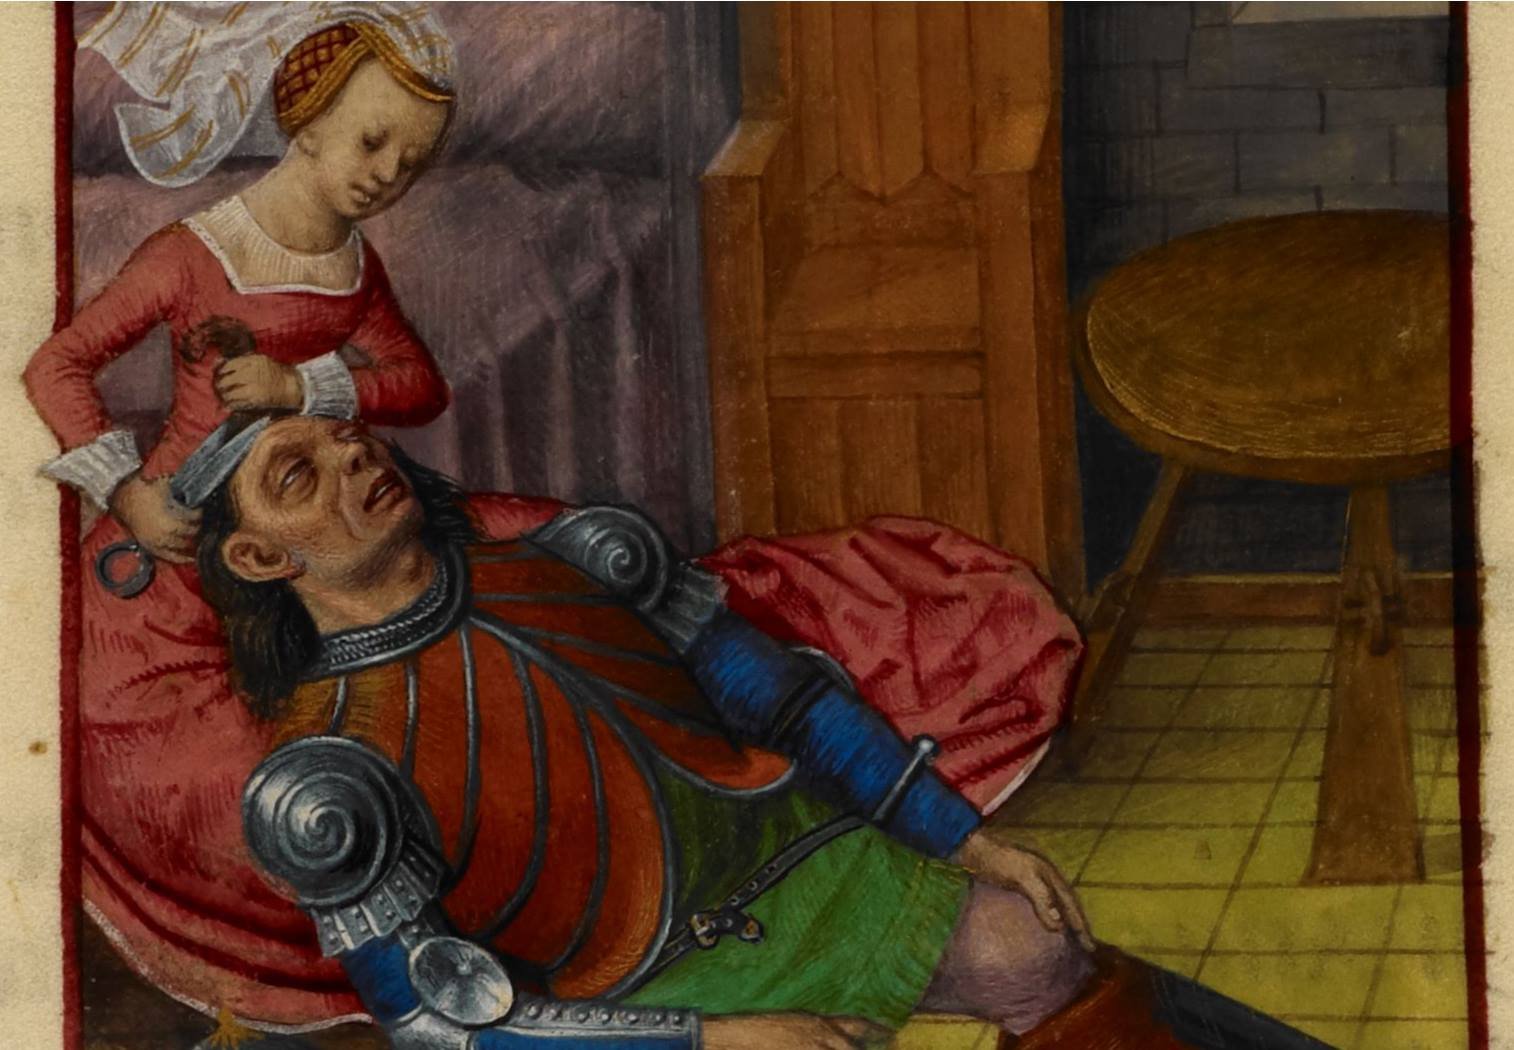 Страдающее сред. Страдающее средневековье. Средневековые иллюстрации смешные. Смешные картины средневековья. Средневековый юмор в картинках.